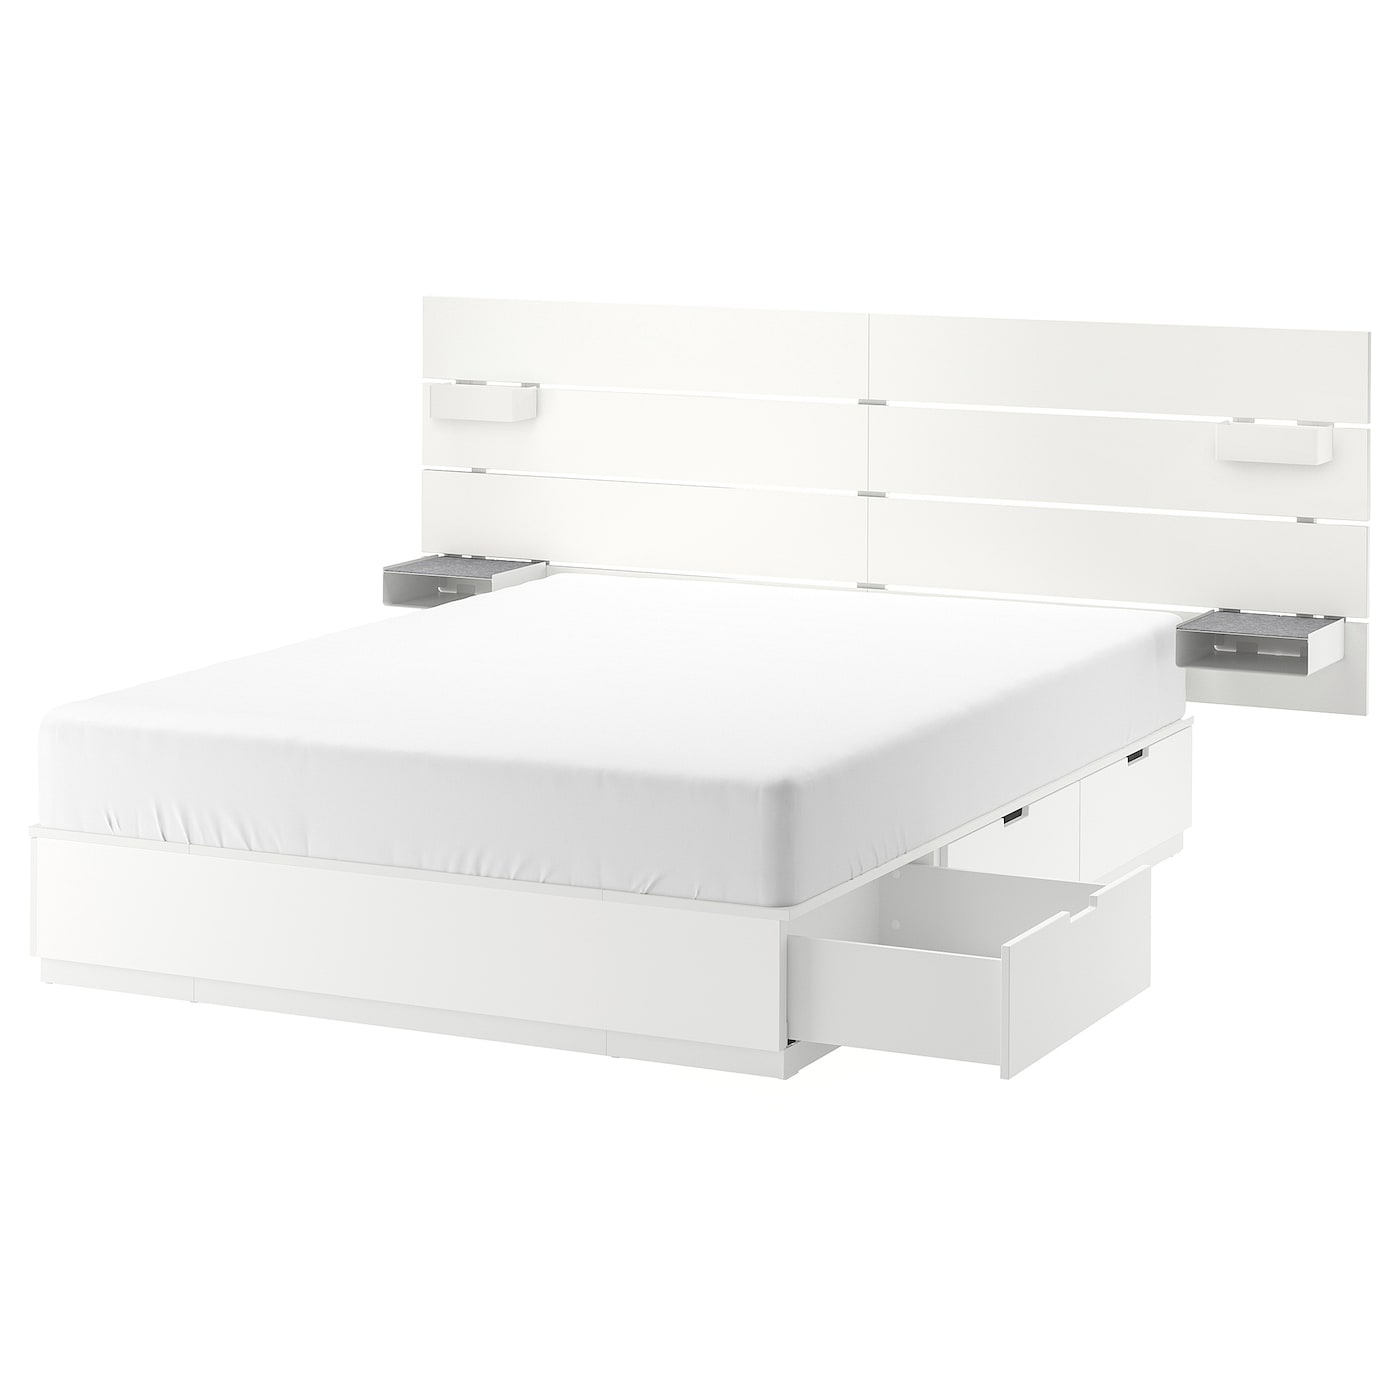 Каркас кровати с местом для хранения и изголовьем - IKEA NORDLI, 200х140 см, белый, НОРДЛИ ИКЕА